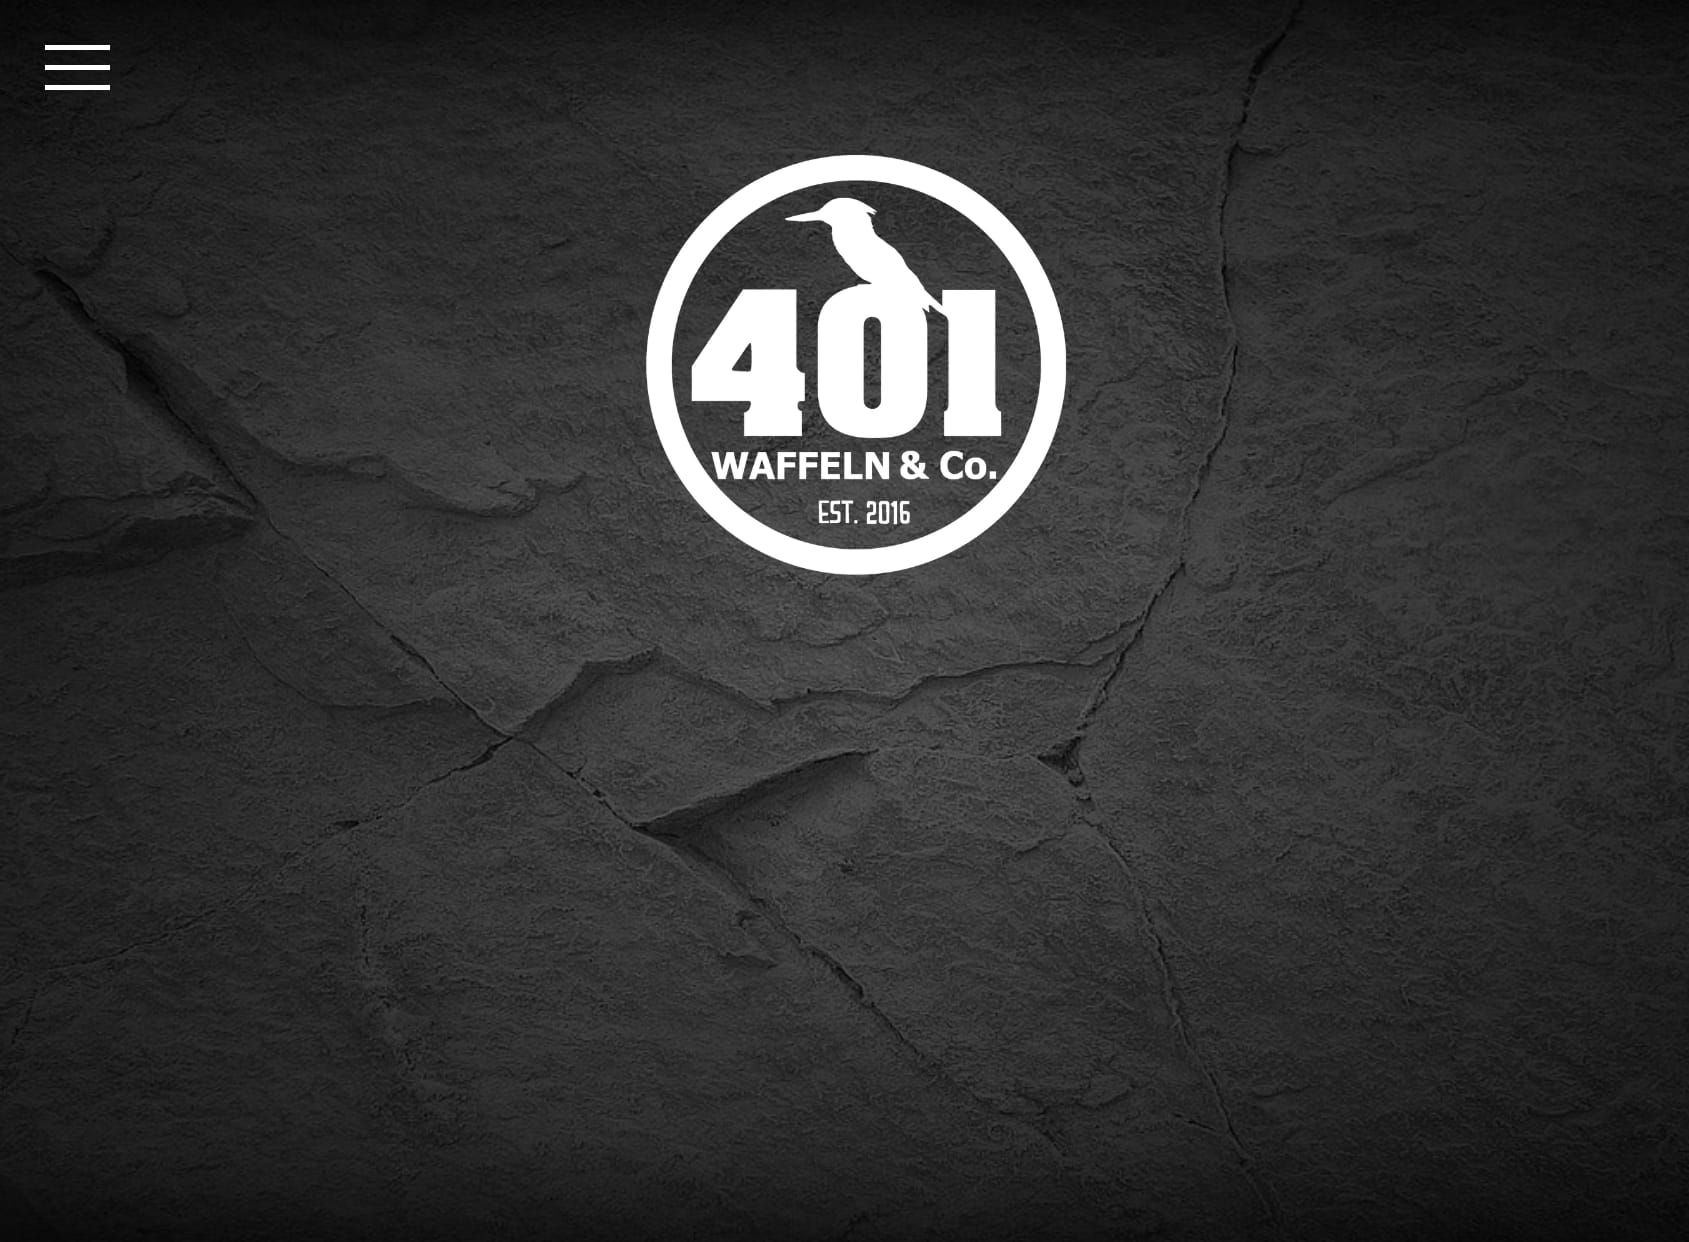 401 - Waffeln & Co